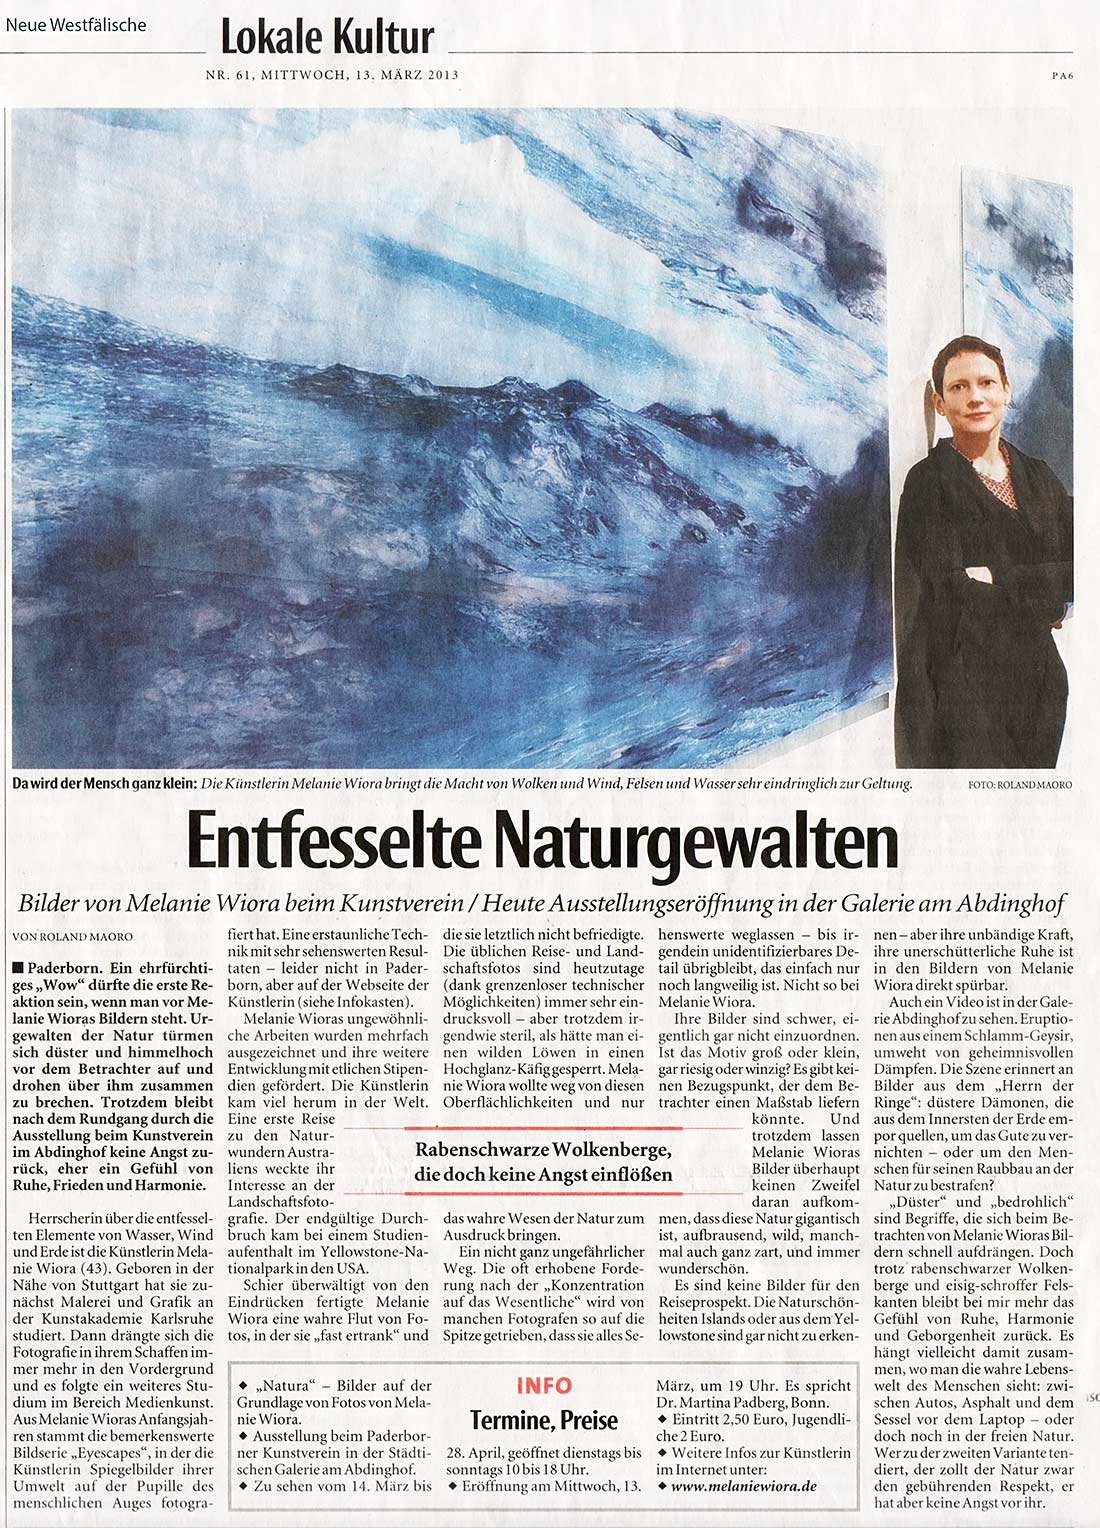 „Entfesselte Naturgewalten“, Neue Westfälische, 13. März 2013